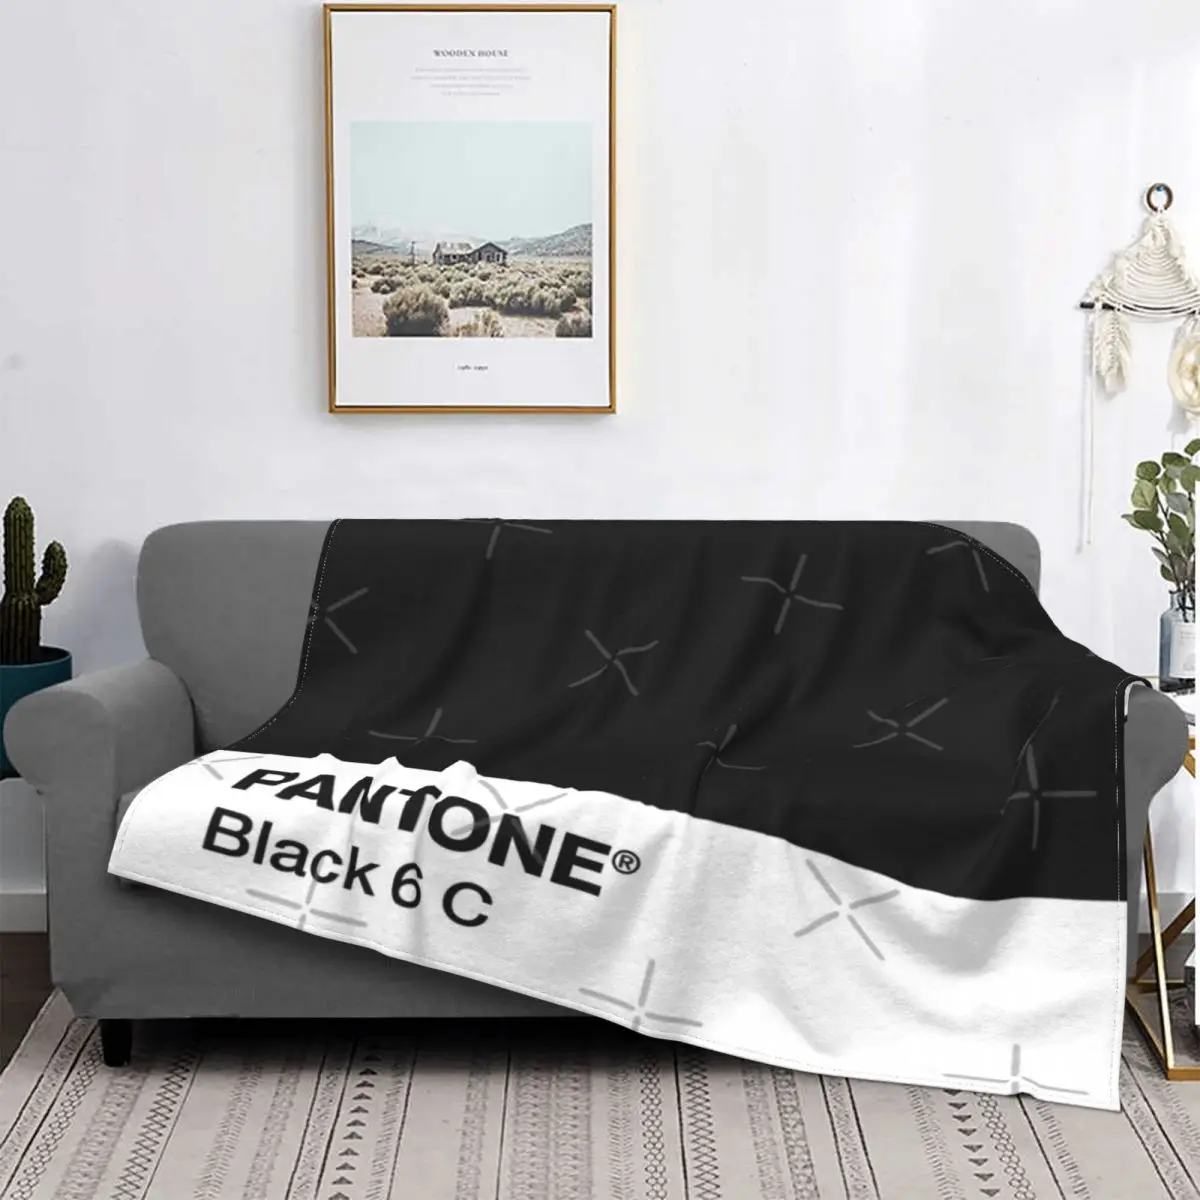 

Pantone-colcha de muselina a cuadros para cama, manta con capucha, toalla de playa de lujo, color negro, 6 C